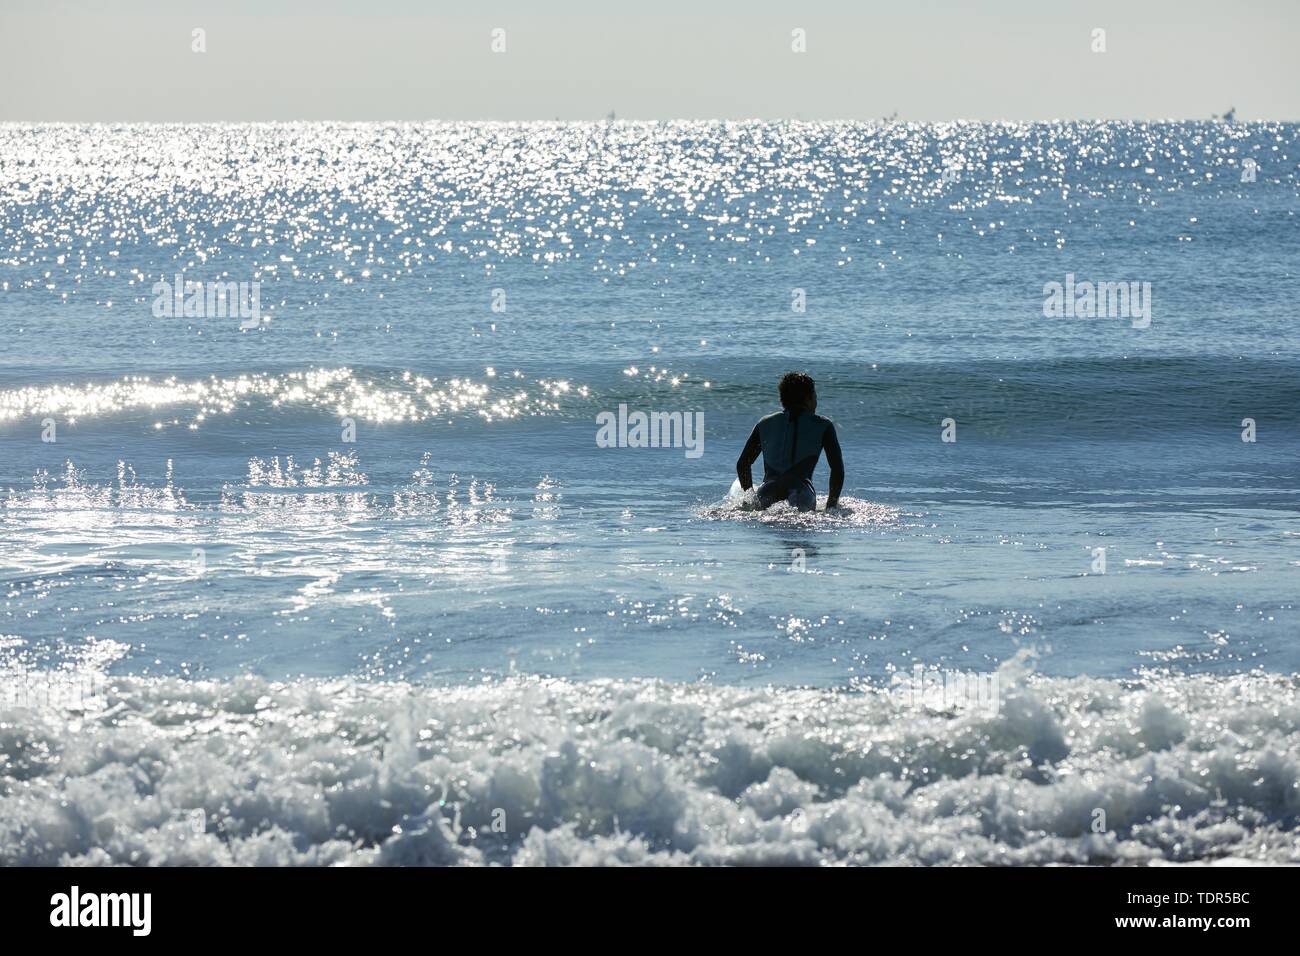 Japanische Surfer am Strand Stockfoto